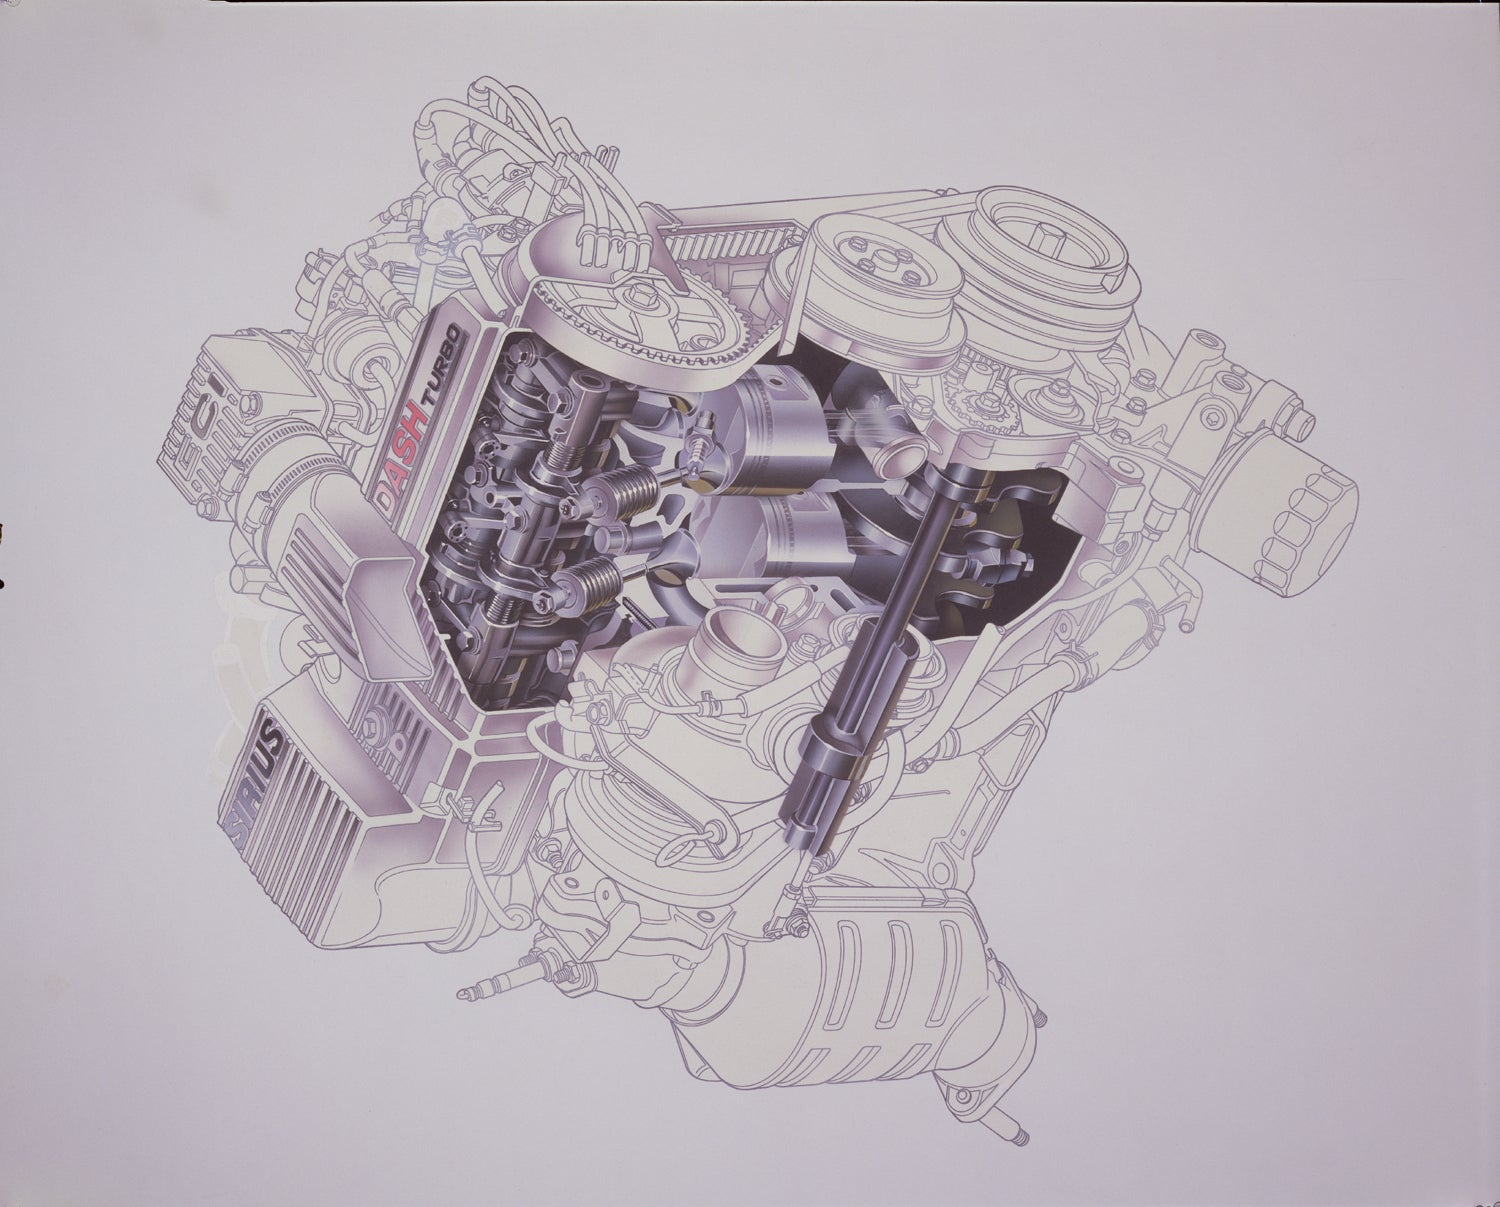 低回転時には2本の吸気バルブのうち1本を休止させることで低速トルクの向上を図った、三菱独自の3×2バルブ方式を採用したシリウスダッシュエンジン